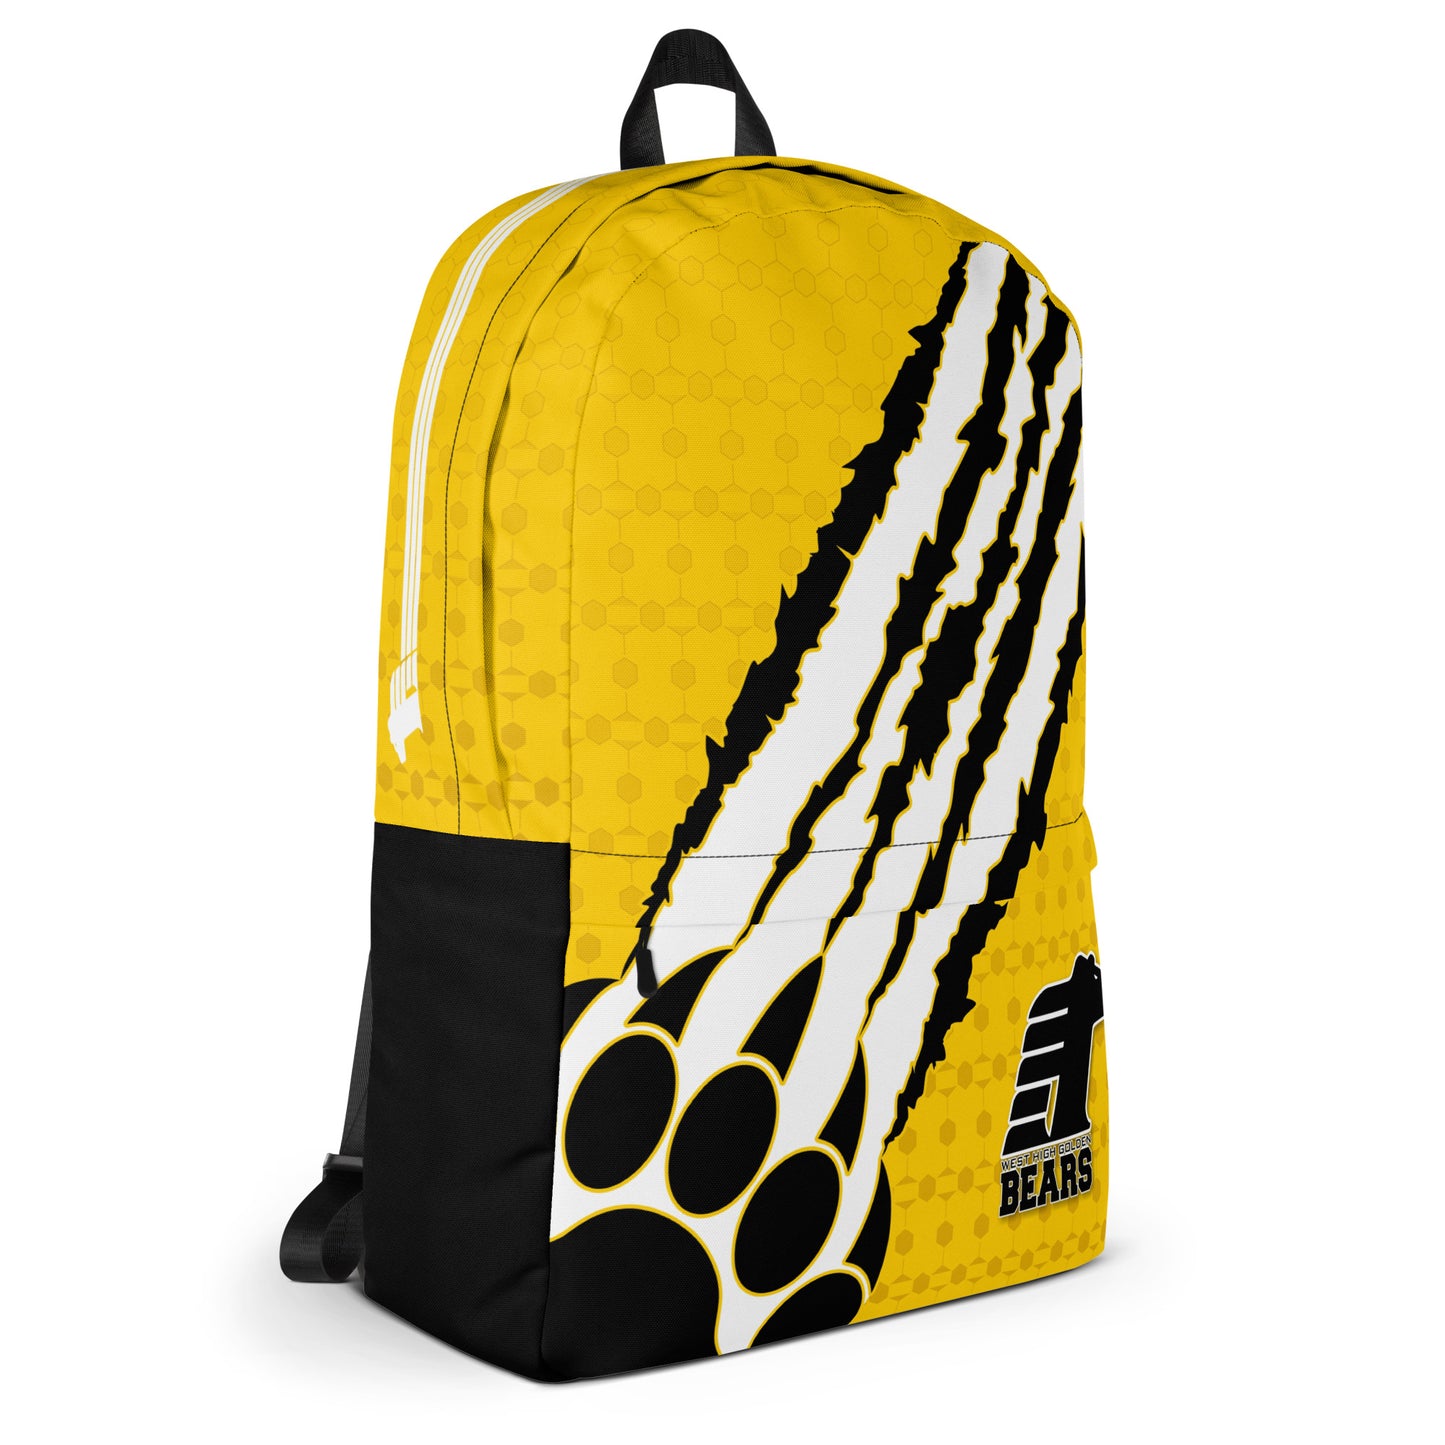 BWHS Backpack - Golden Bears